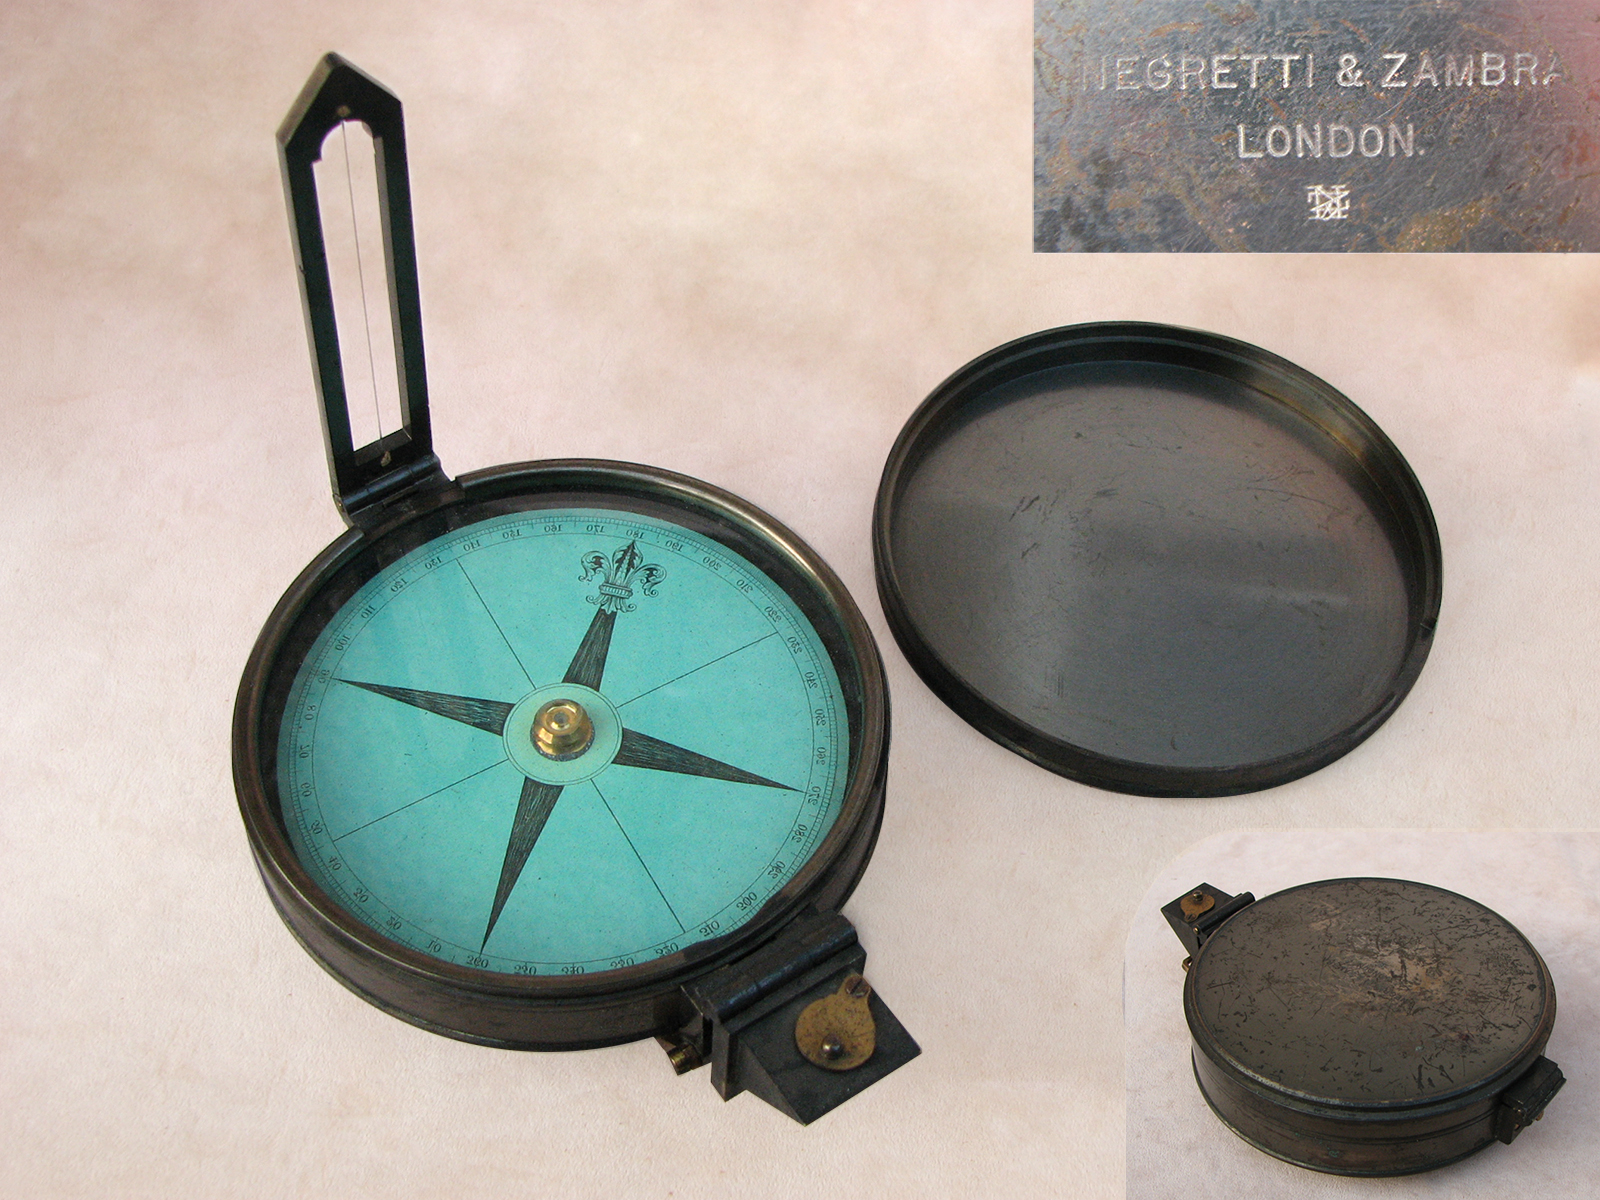 Negretti & Zambra green card prismatic compass, circa 1880